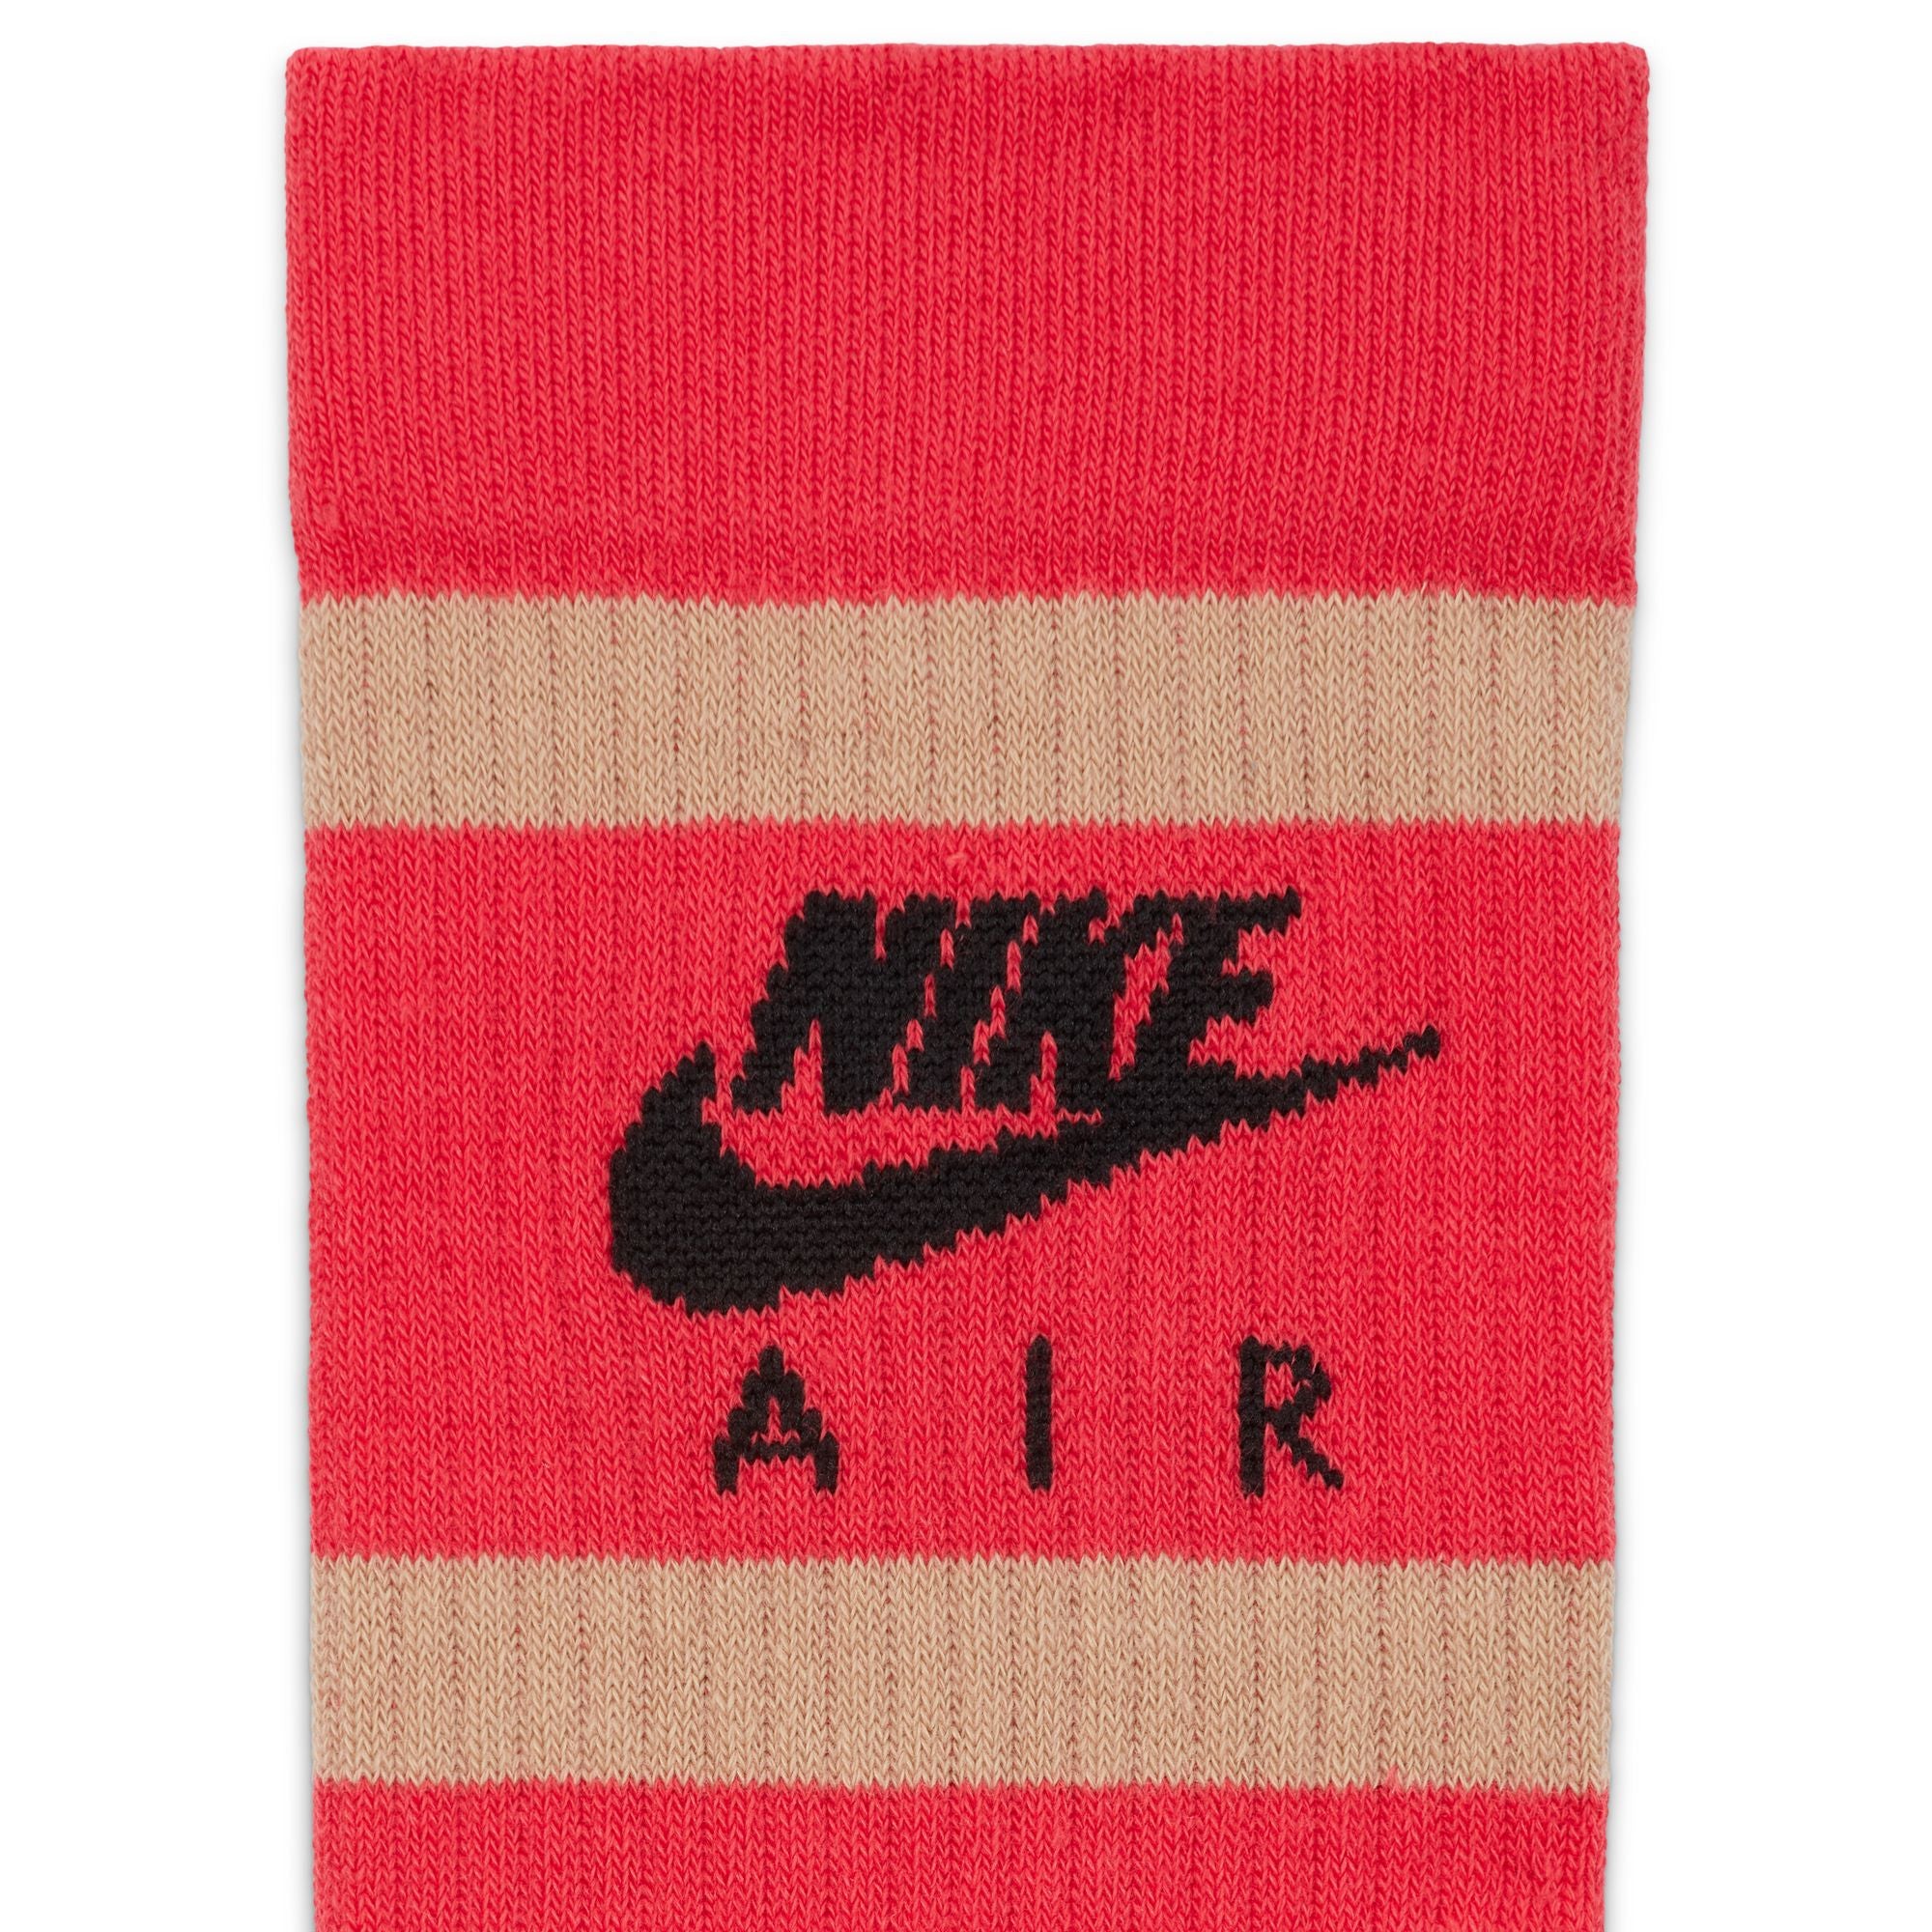 Nike Everyday Essential 2 Pack Socks - Red/Black & Tan/Black